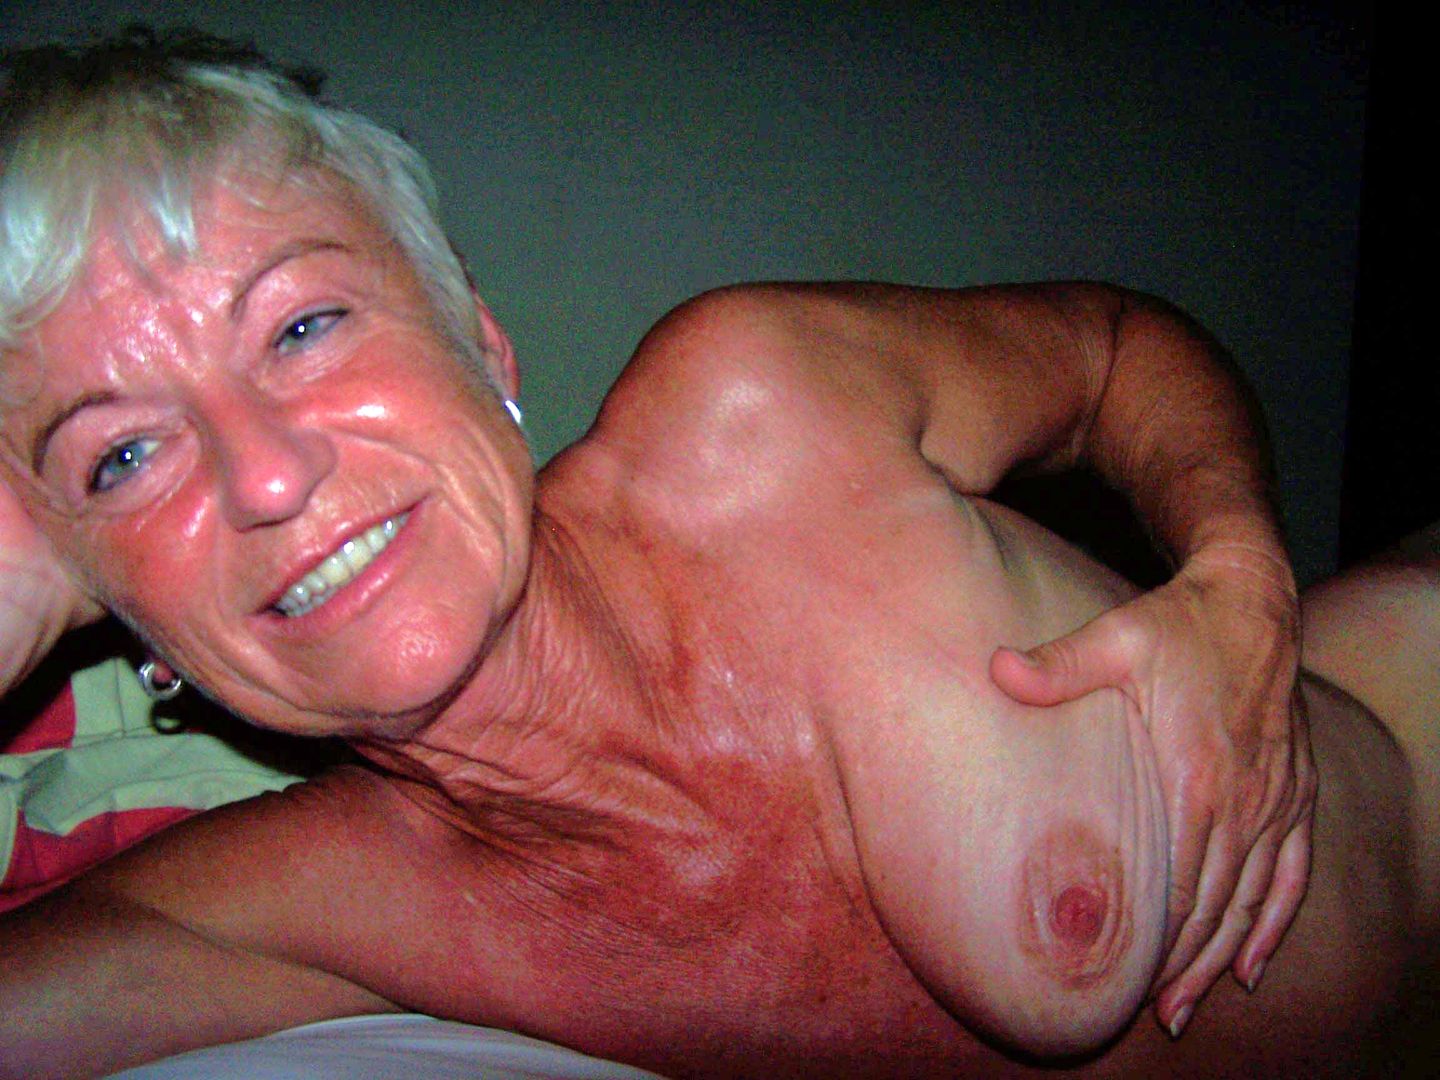 Porn - scrupulous-amateur-mature-women-nude-759td6z8yb-1440x1080 Porn pic